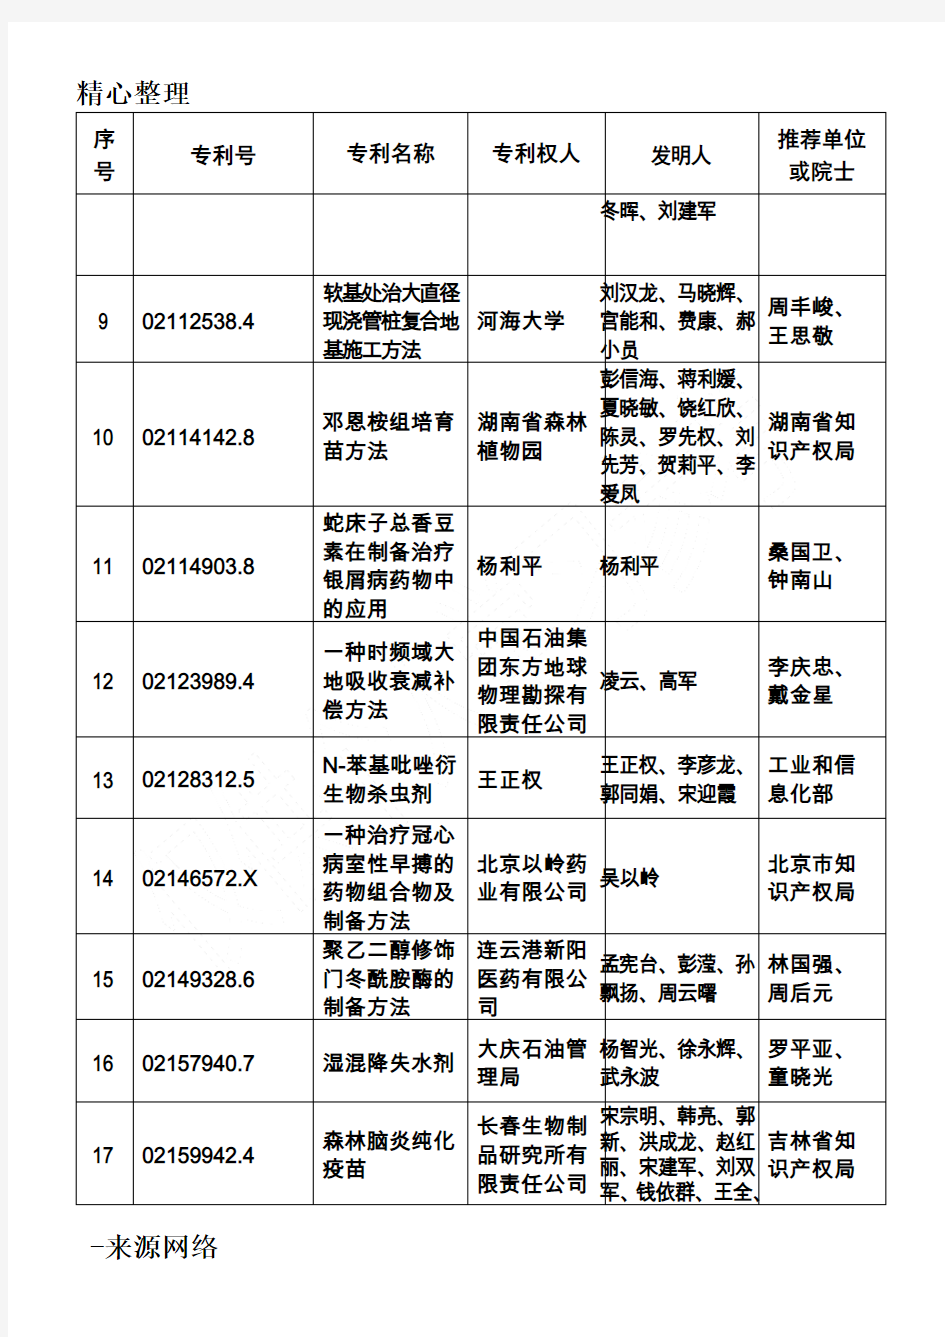 第十四届中国专利优秀奖项目办法名单